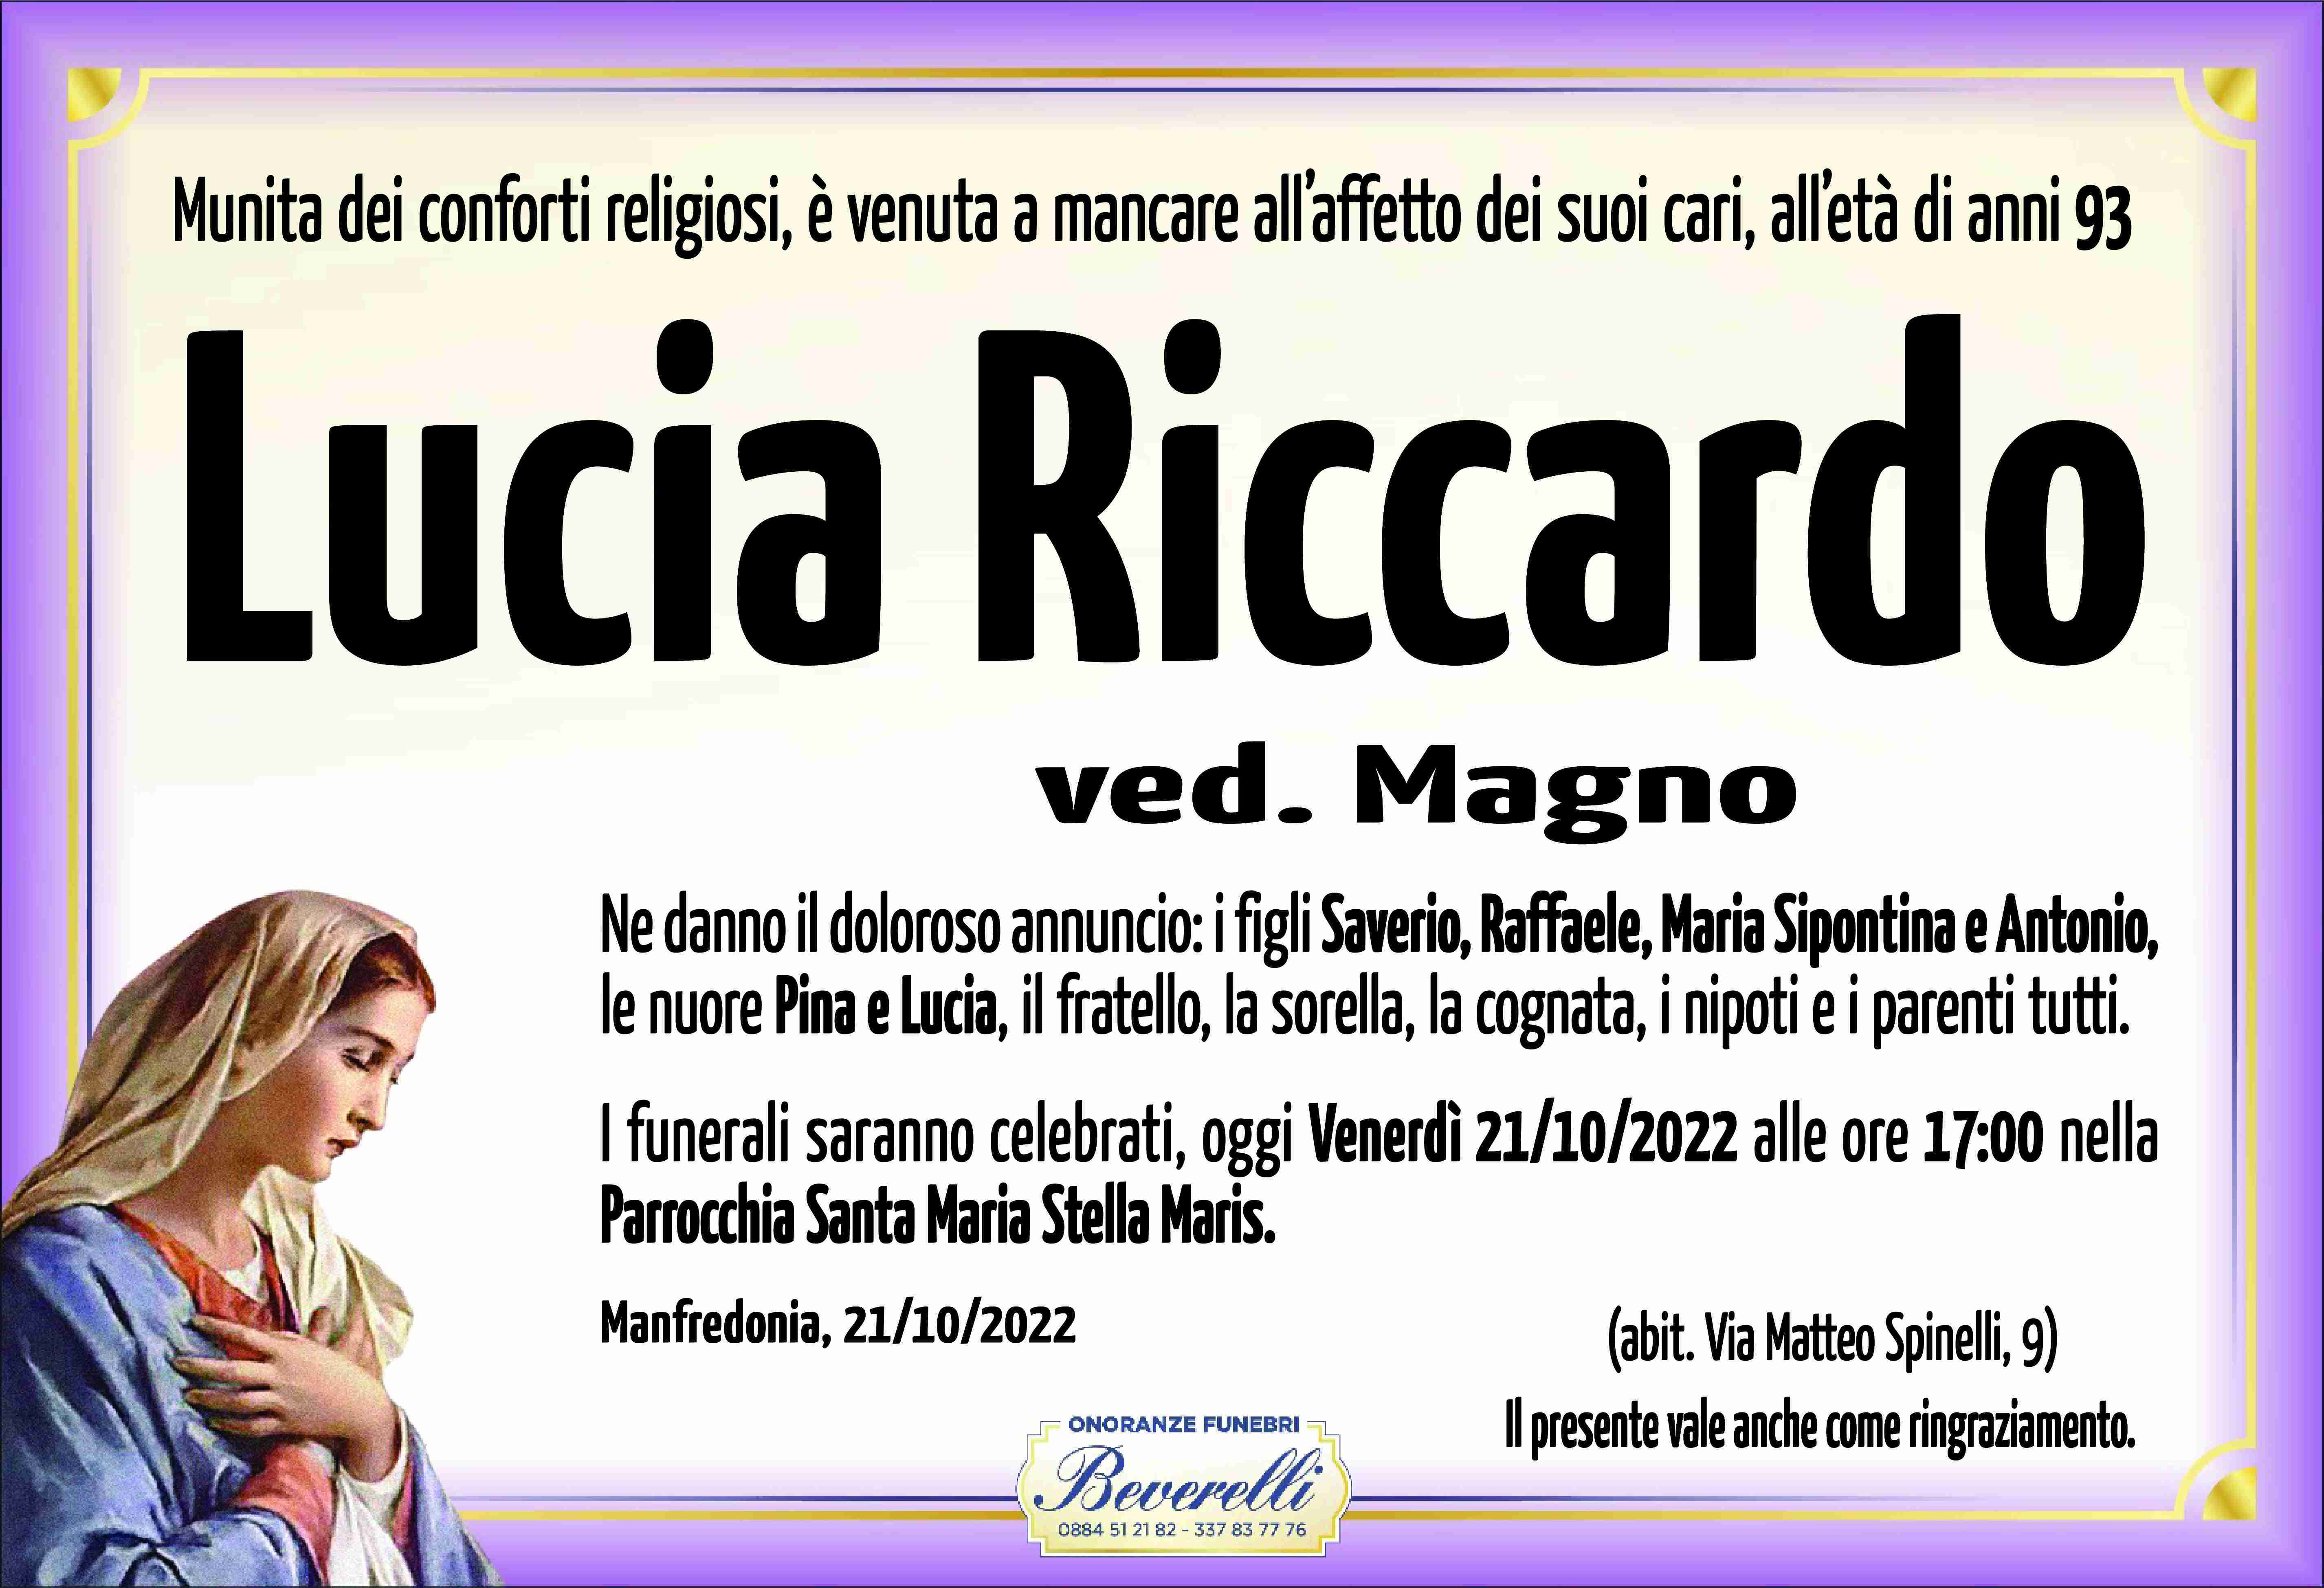 Lucia Riccardo